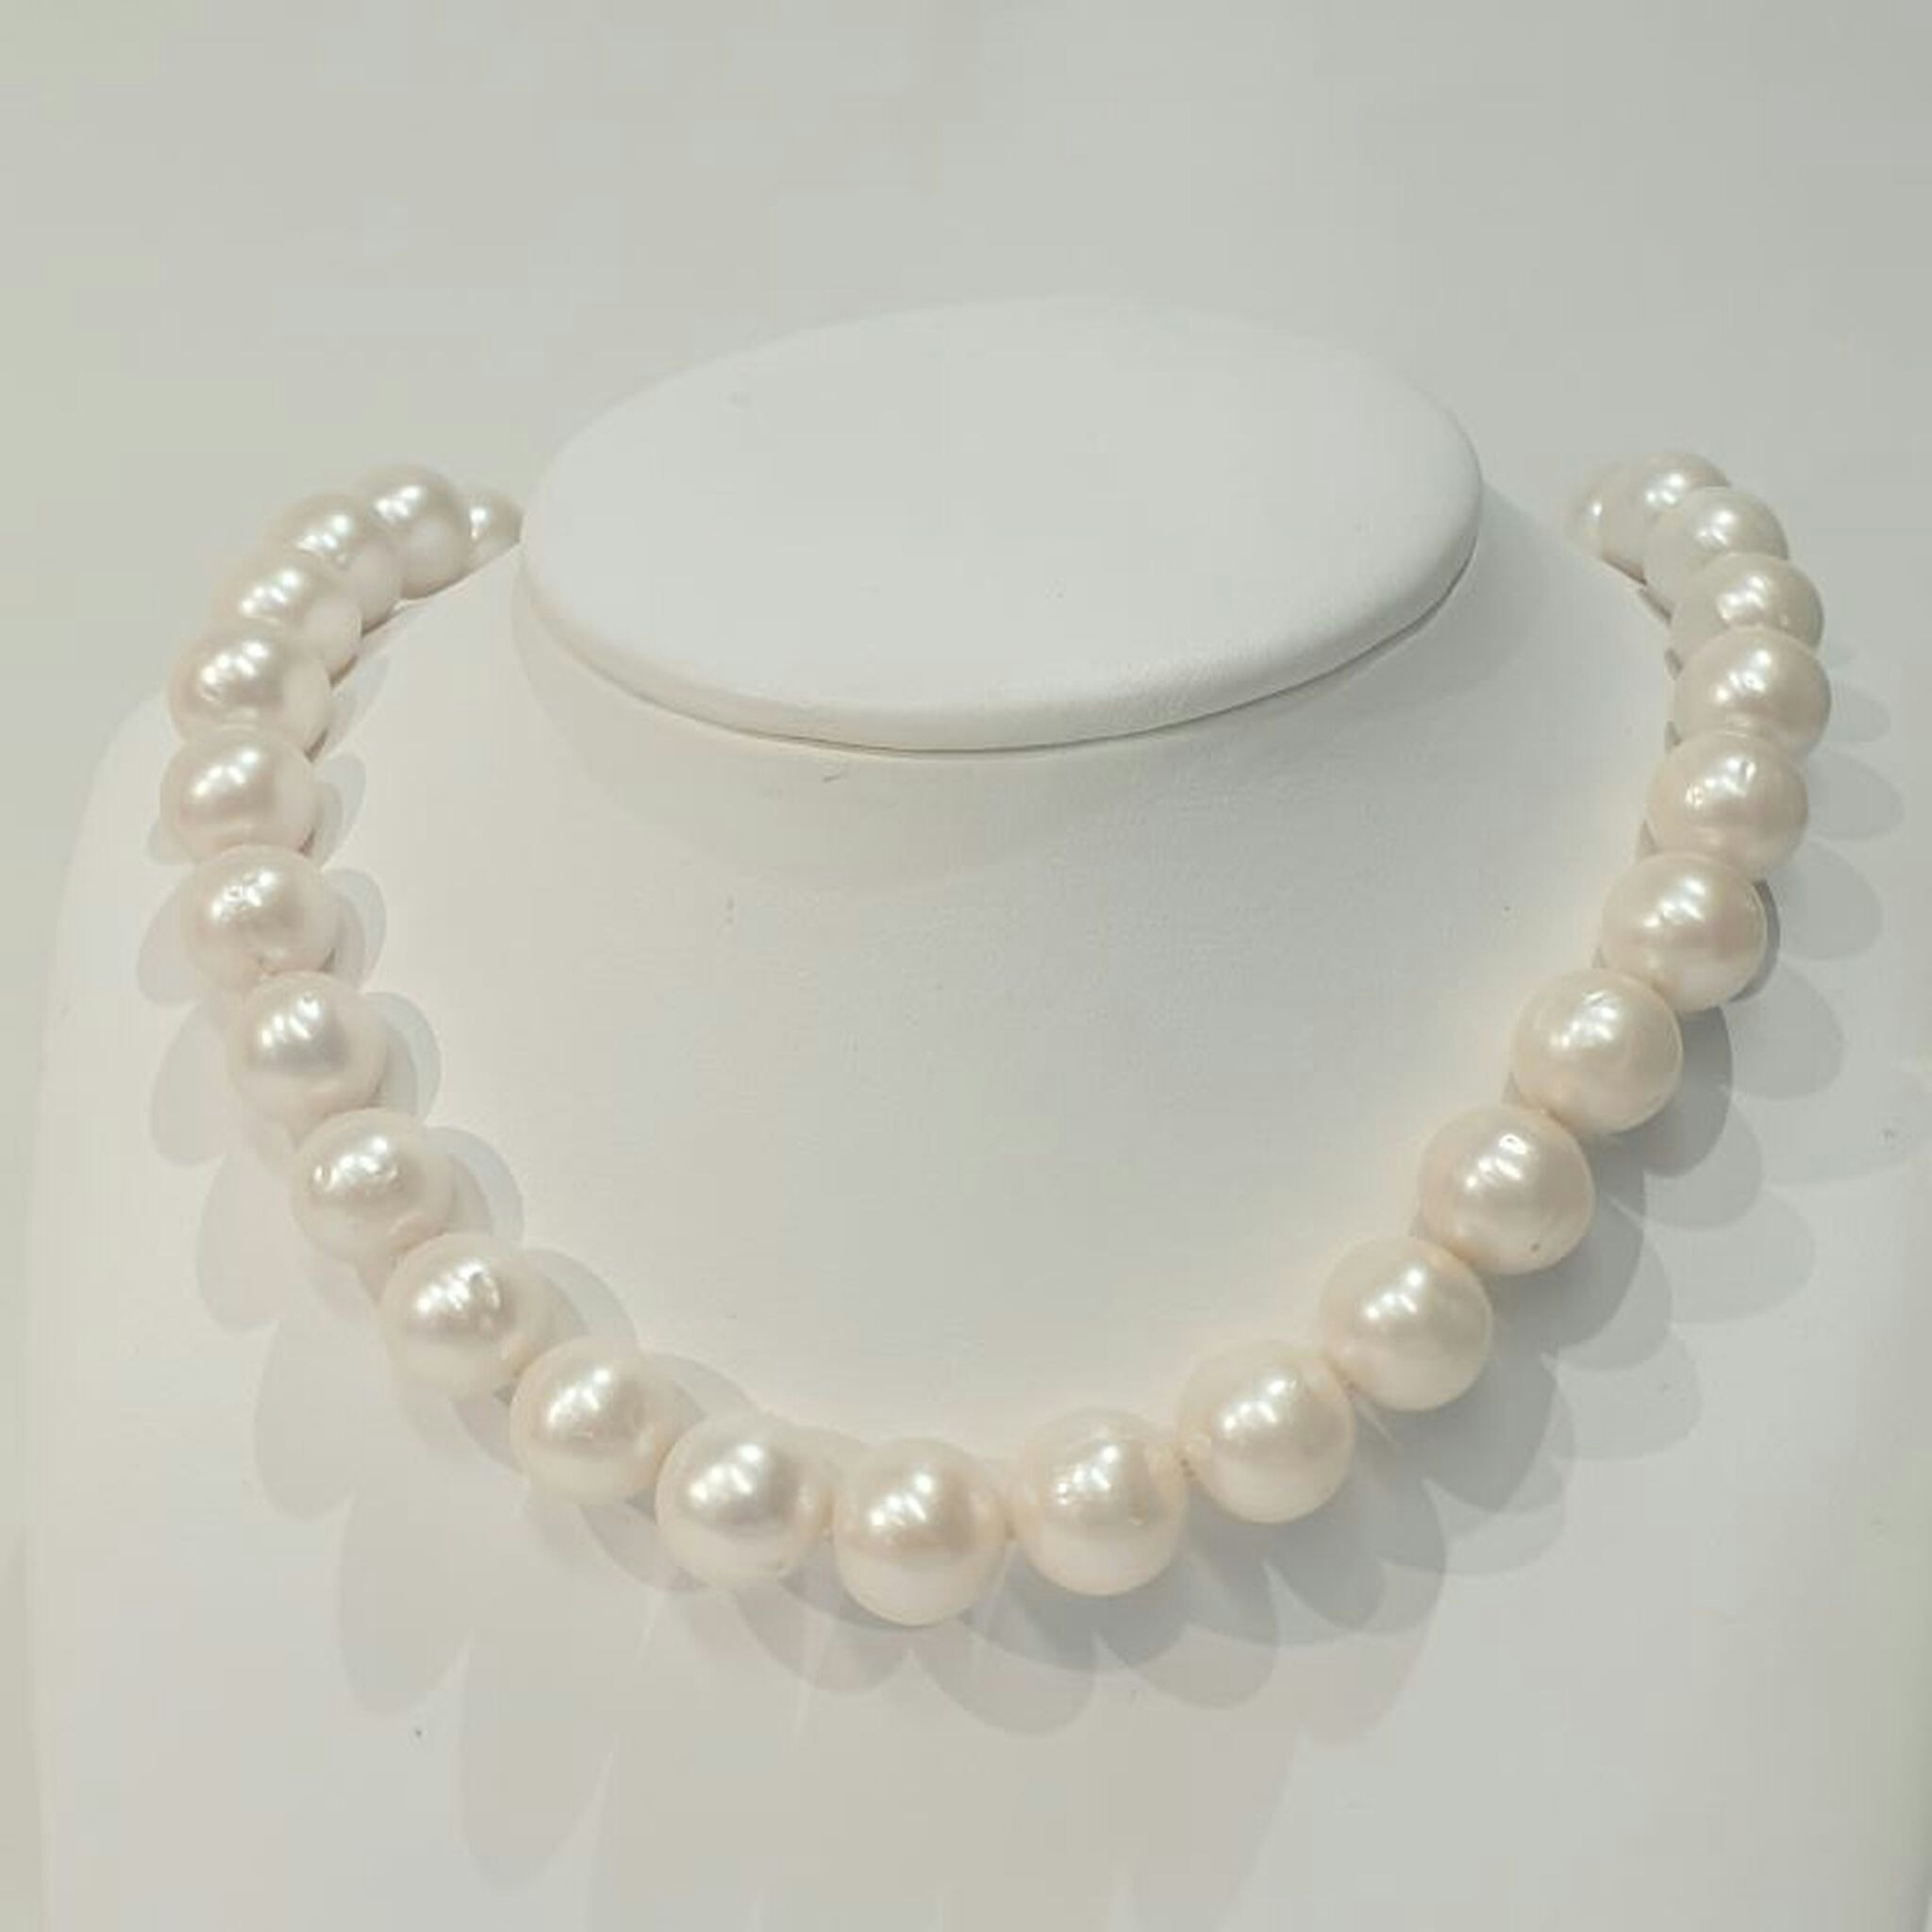 Magnifik collier med vita pärlor 12-13 mm